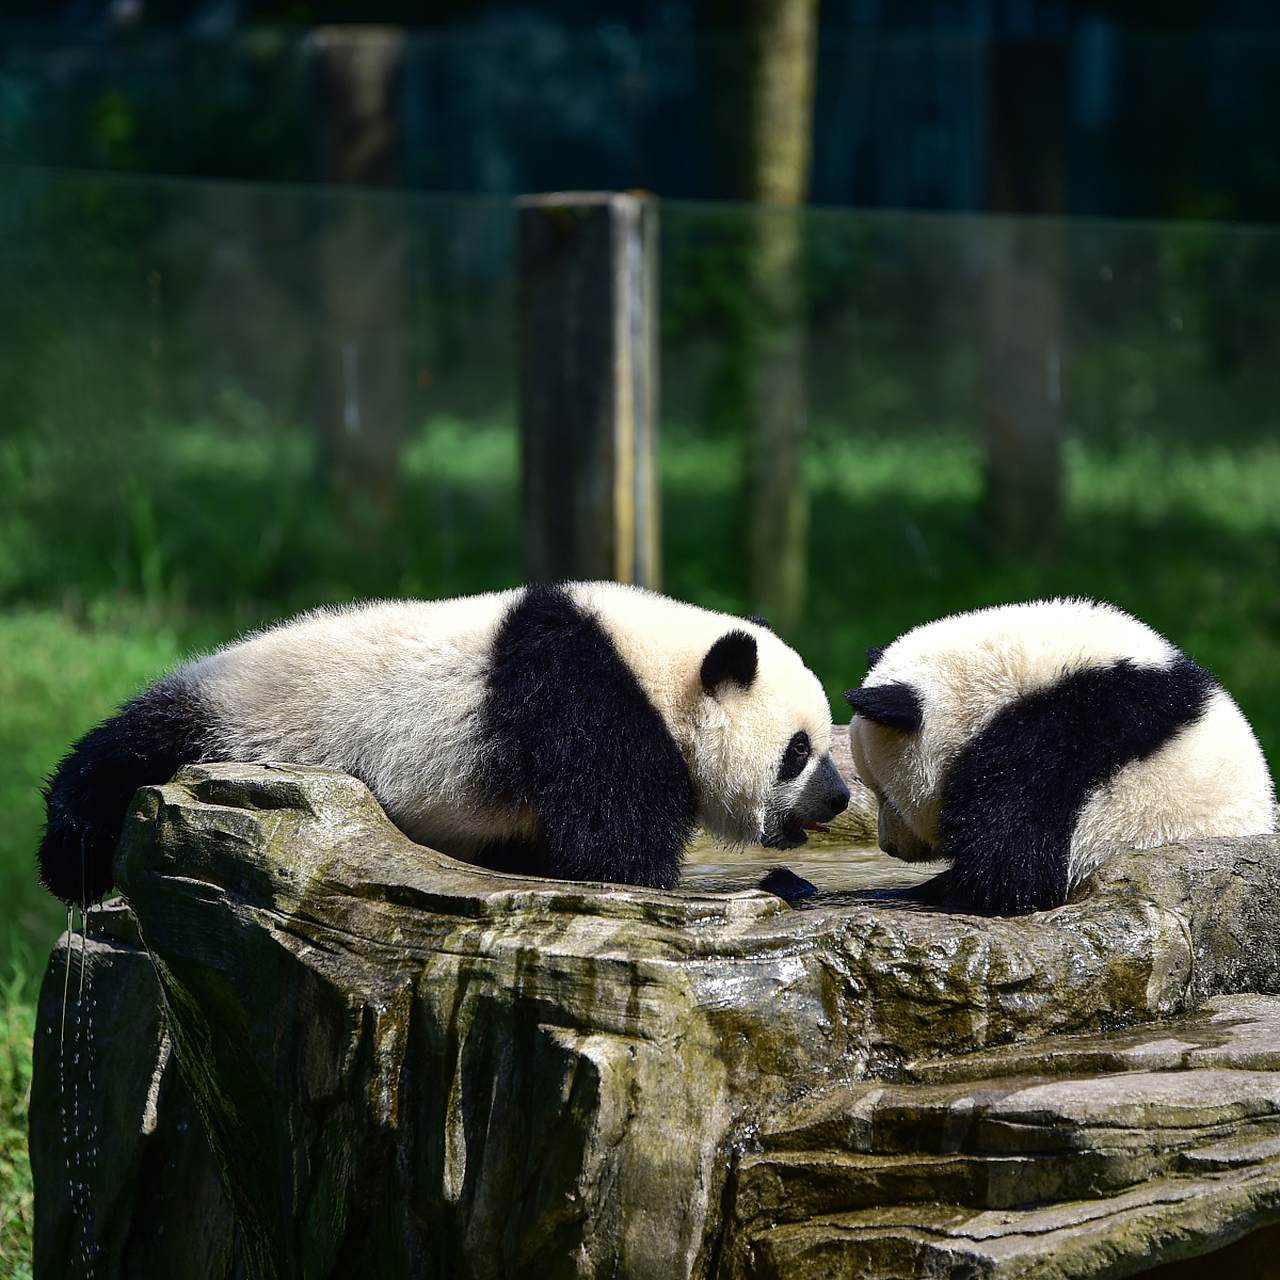 两个熊猫照片图片